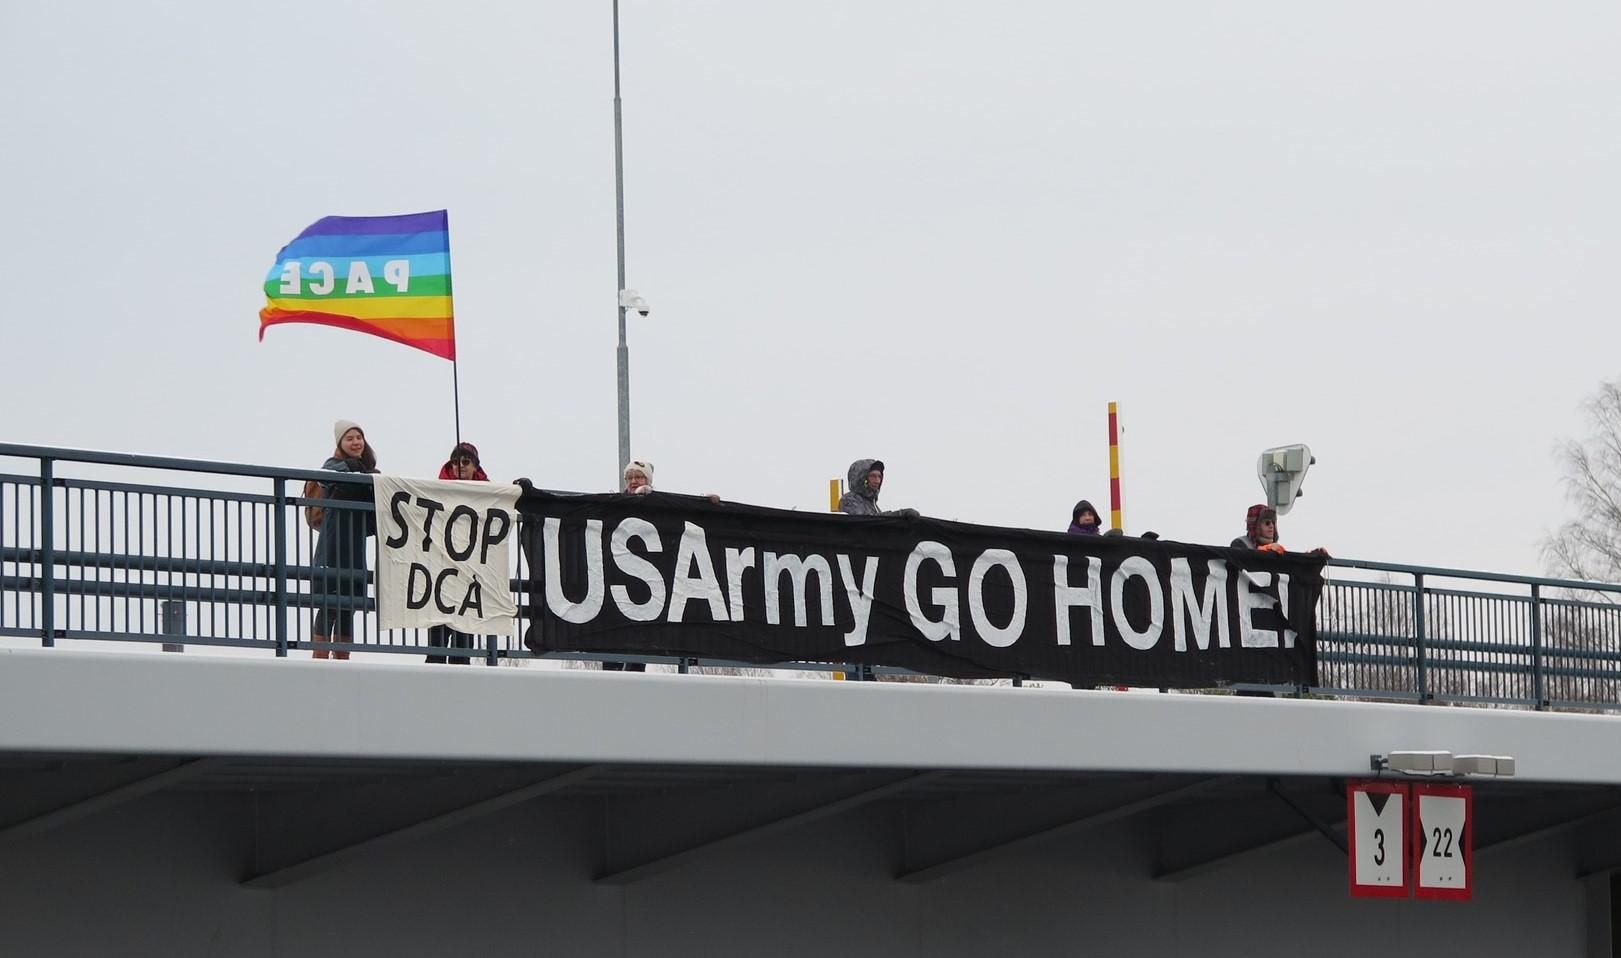 Mielenosoittajia sillalla pitämässä sillankaikeella näkyvää "US Army Go Home!" -banderollia sekä kädessä rauhanlippua.